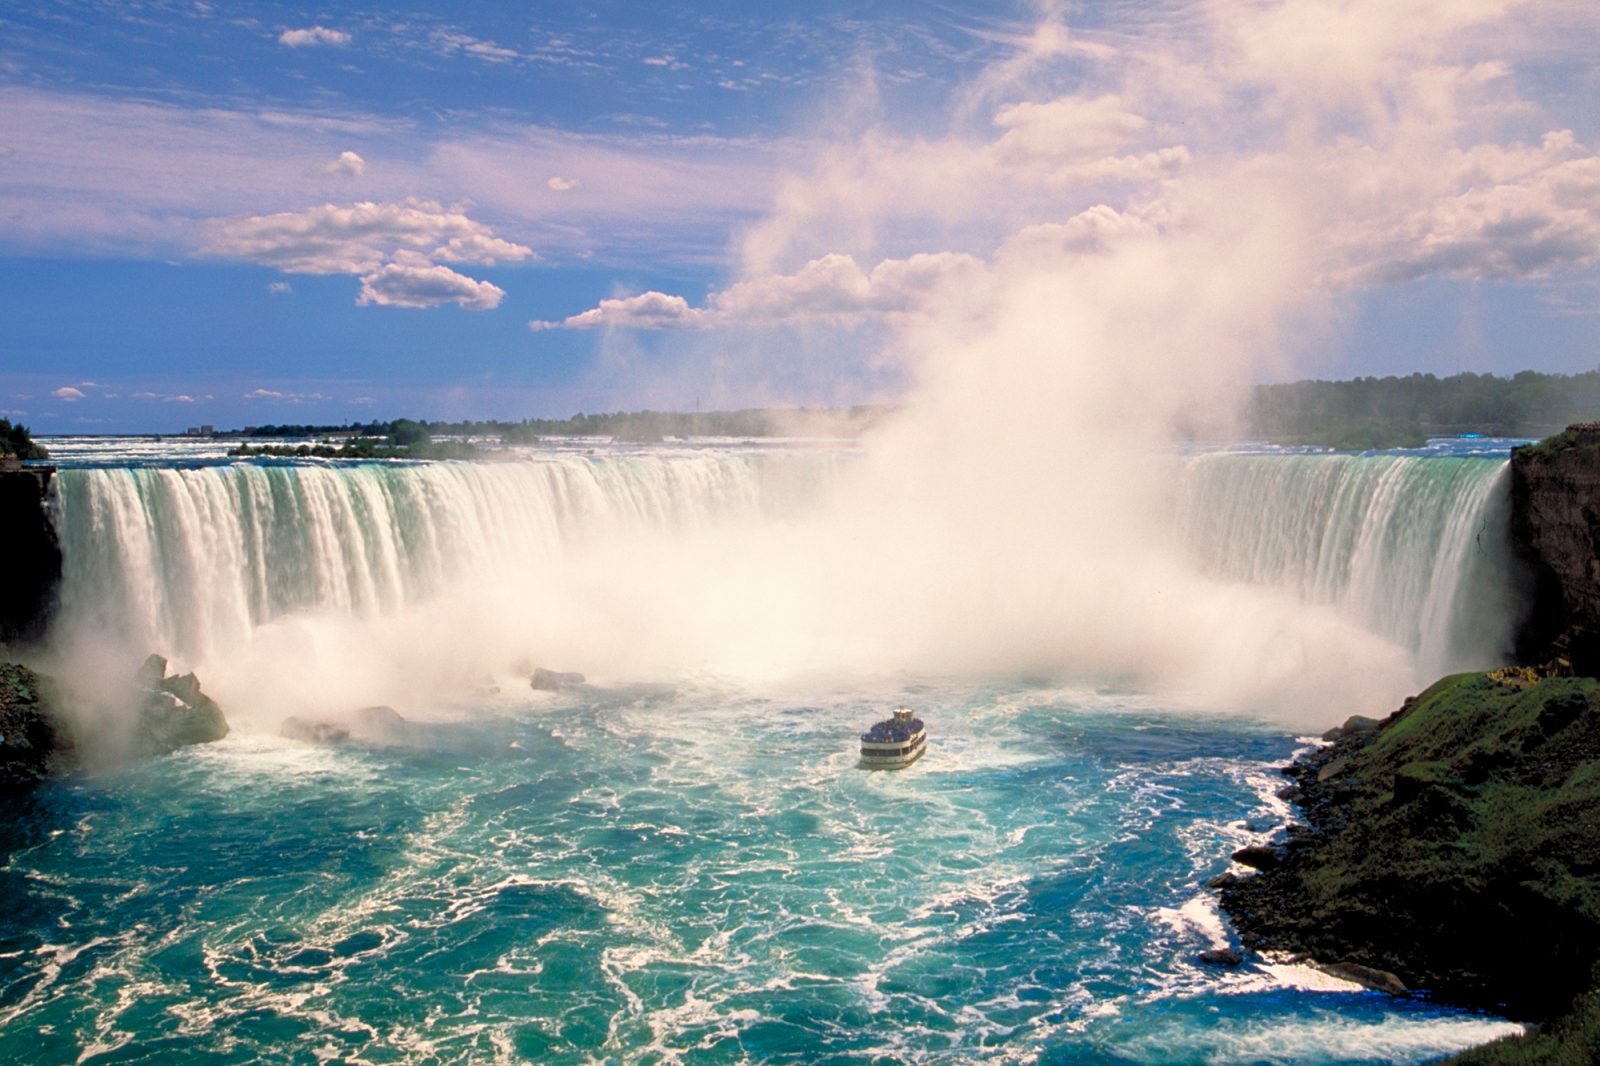 Niagara Falls Tour, Ontario Canada Day Excursion